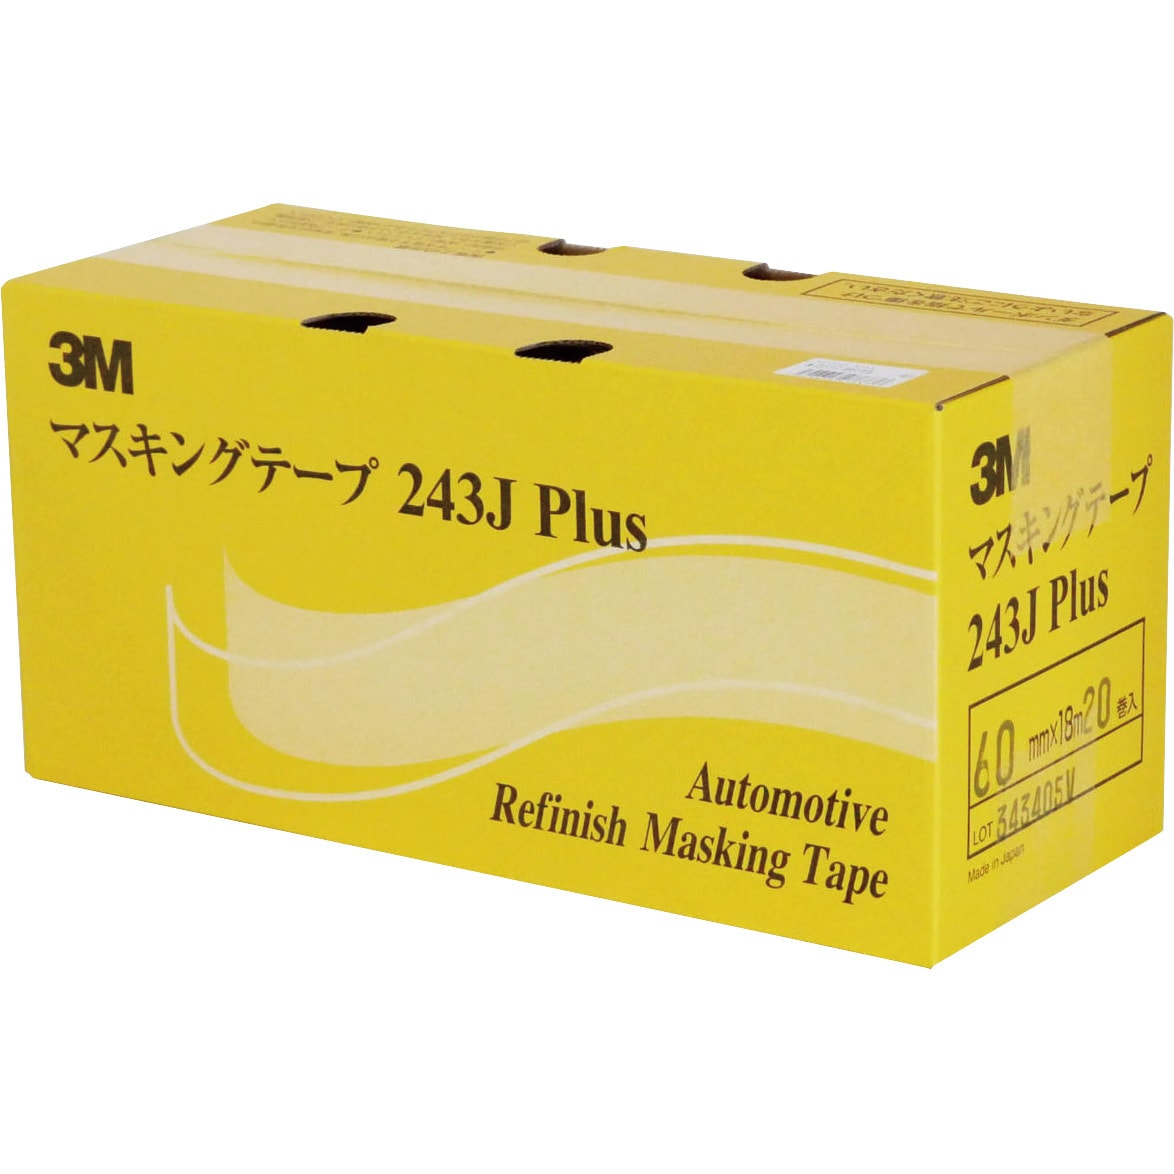 3M マスキングテープ No.243J Plus